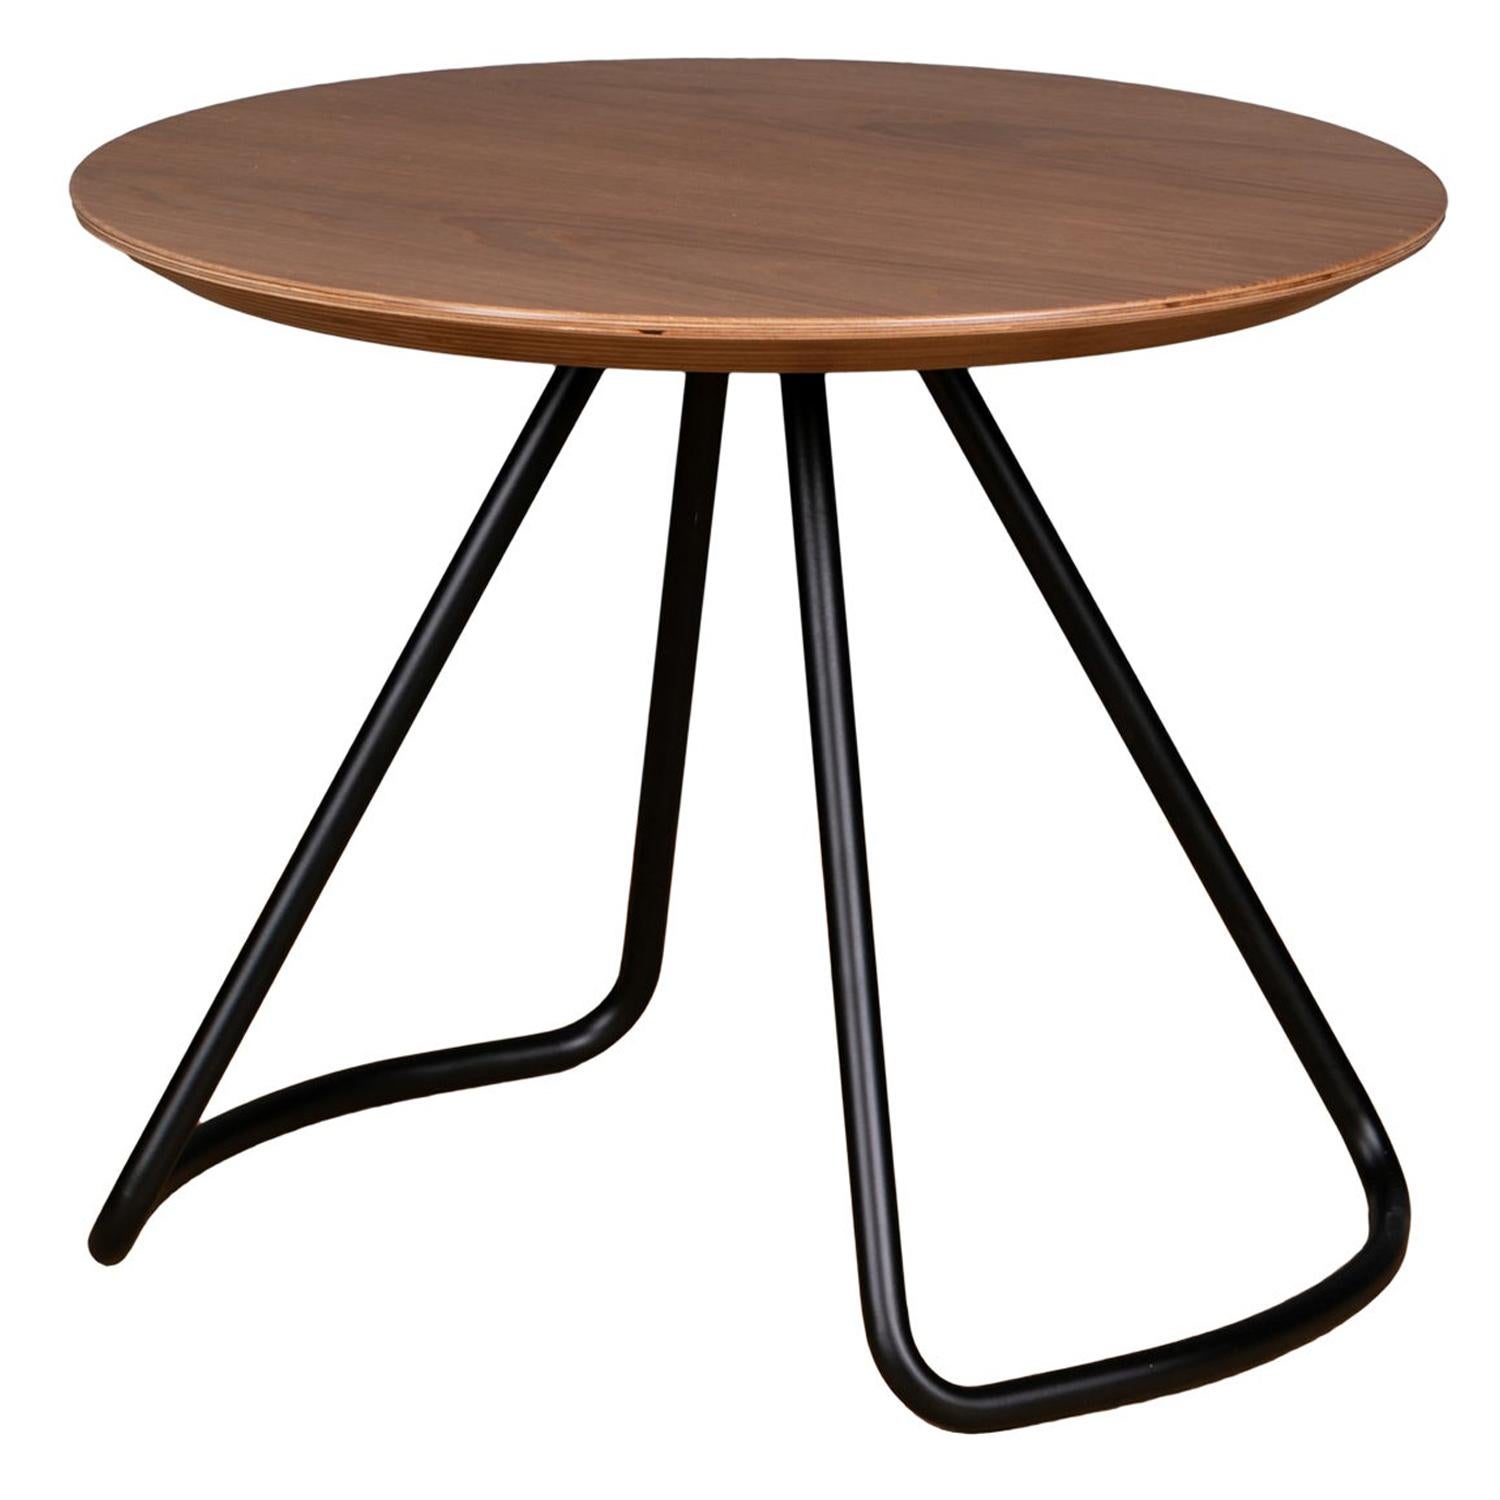 Table basse Sama, table basse moderne contemporaine et minimaliste en chêne naturel et métal noir